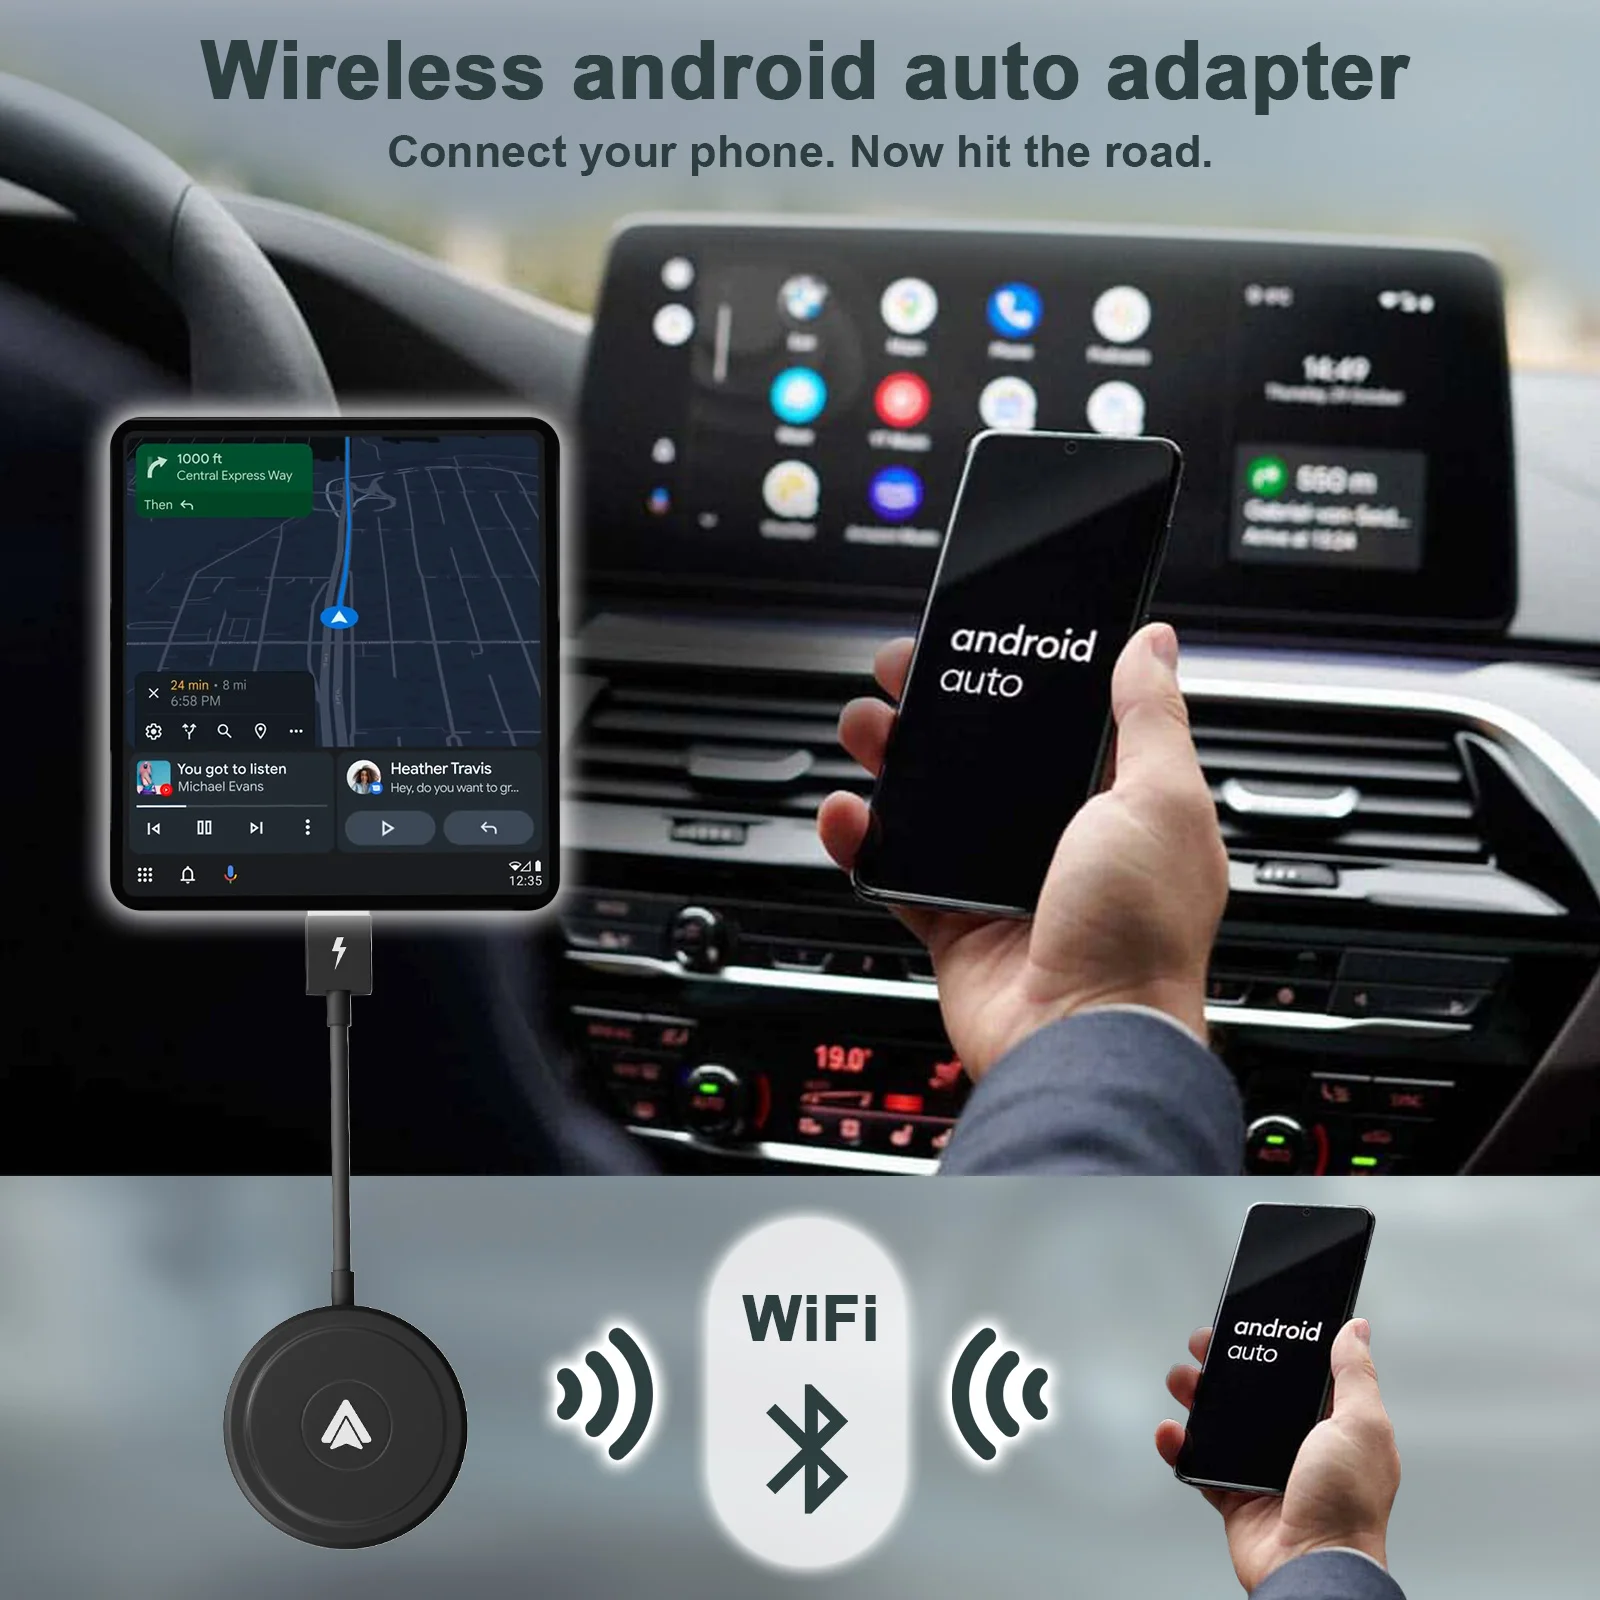 WLAN für Android Auto, c't